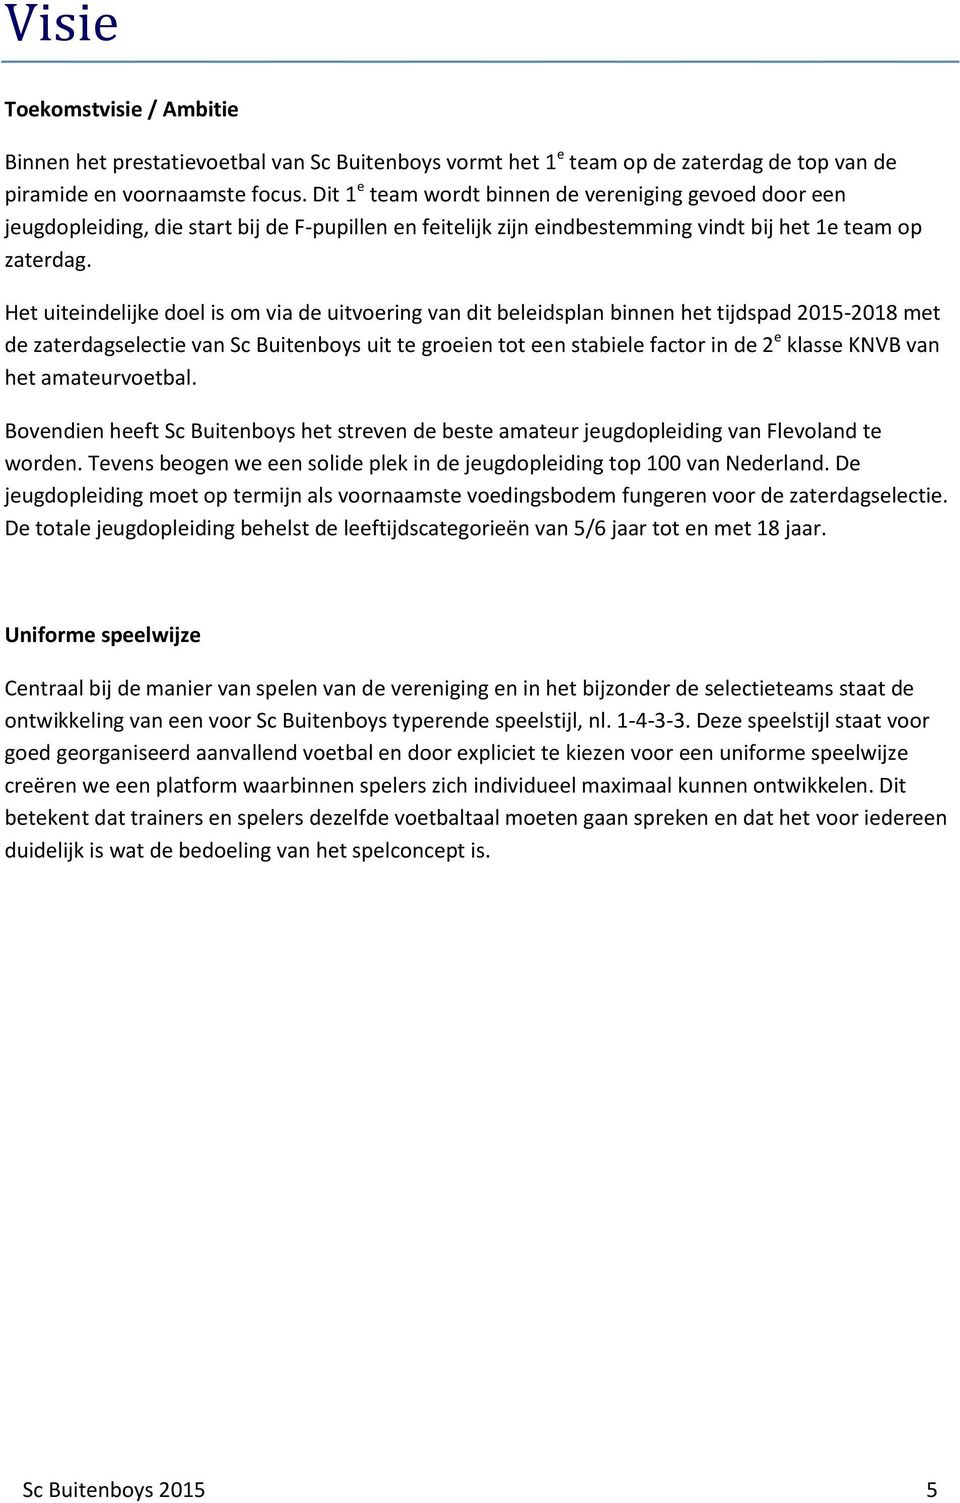 Het uiteindelijke doel is om via de uitvoering van dit beleidsplan binnen het tijdspad 2015-2018 met de zaterdagselectie van Sc Buitenboys uit te groeien tot een stabiele factor in de 2 e klasse KNVB